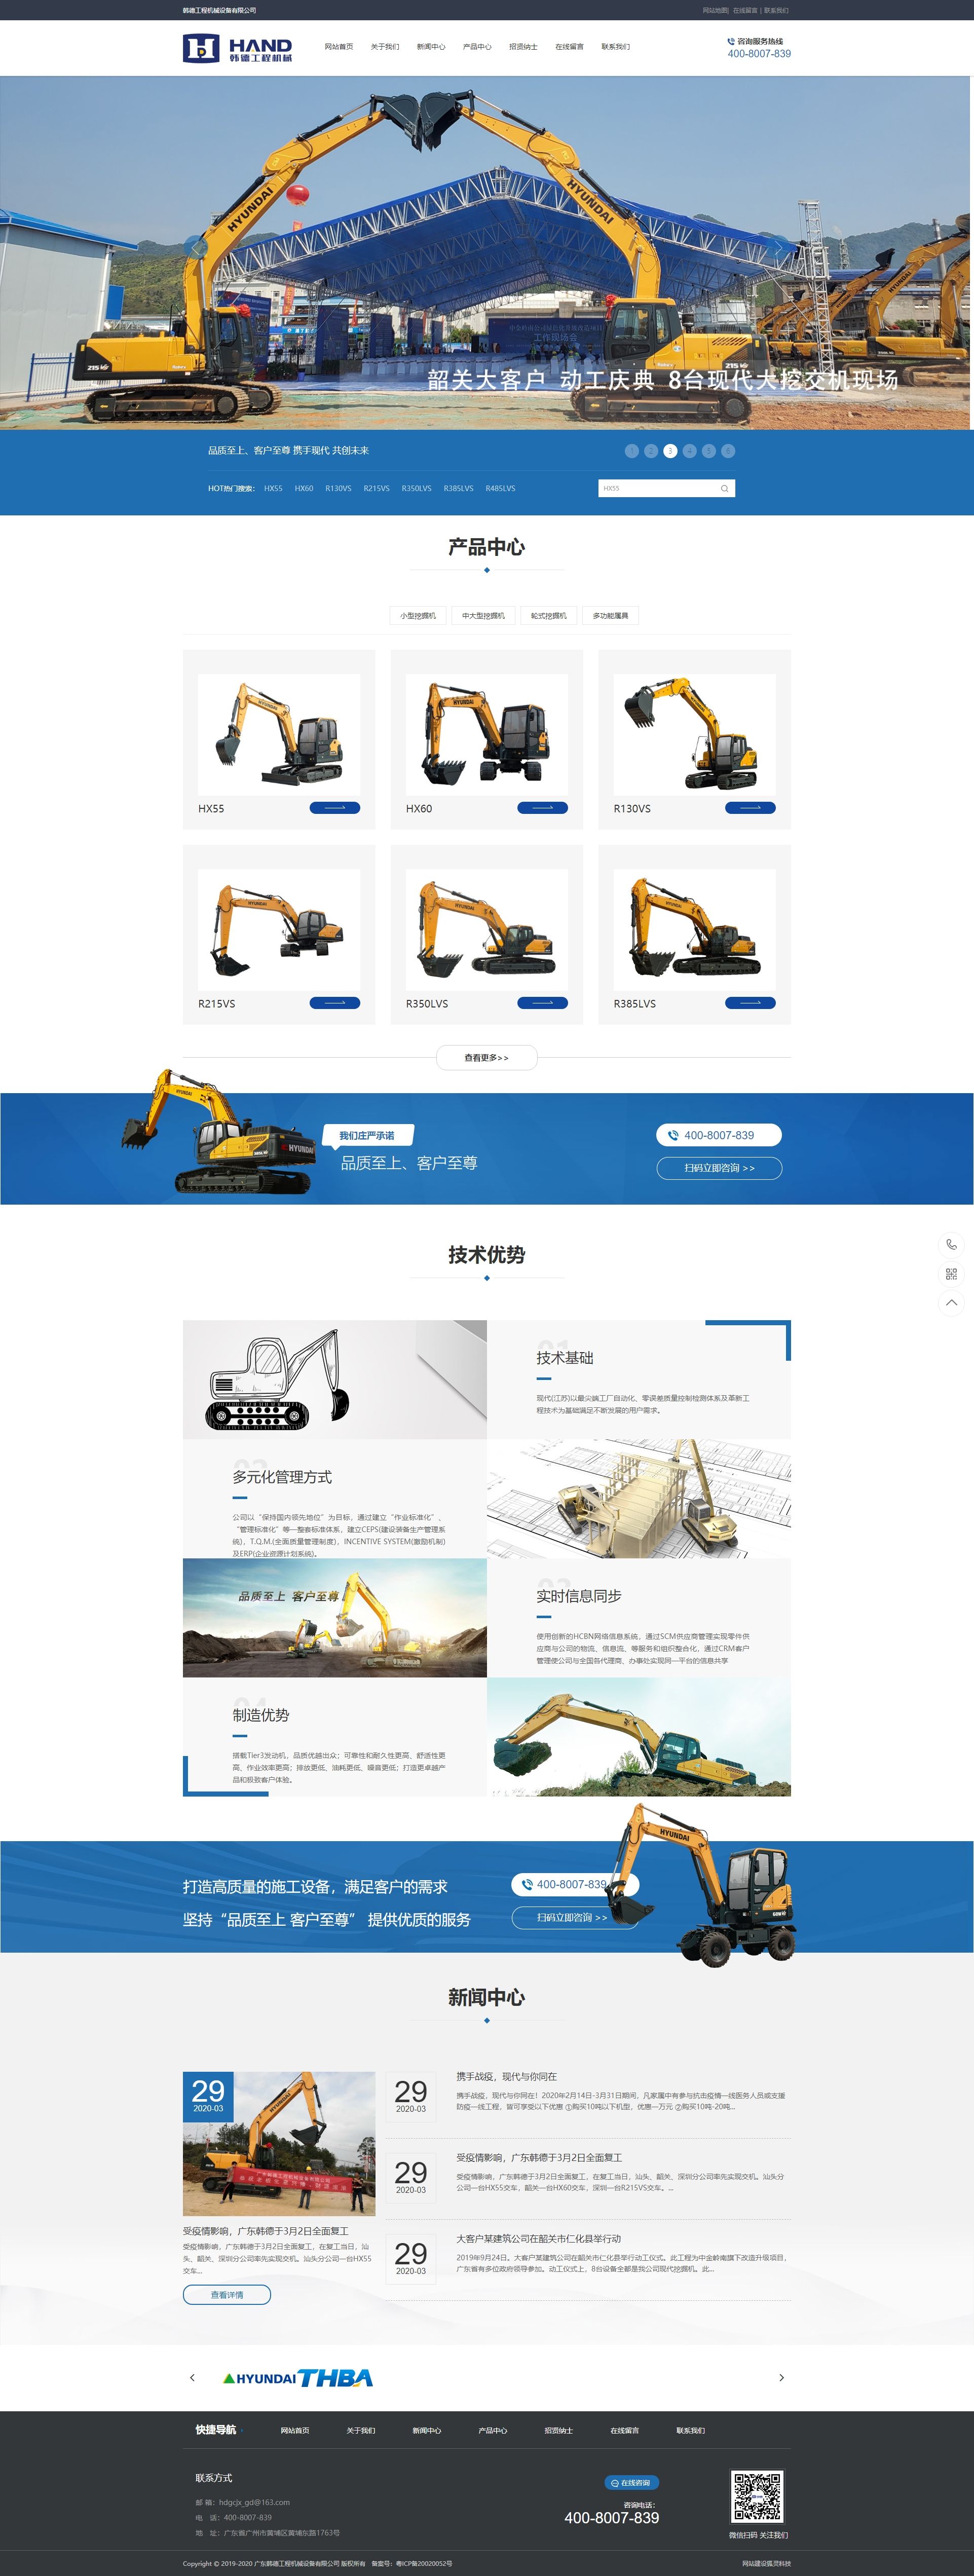 韩德工程机械网站